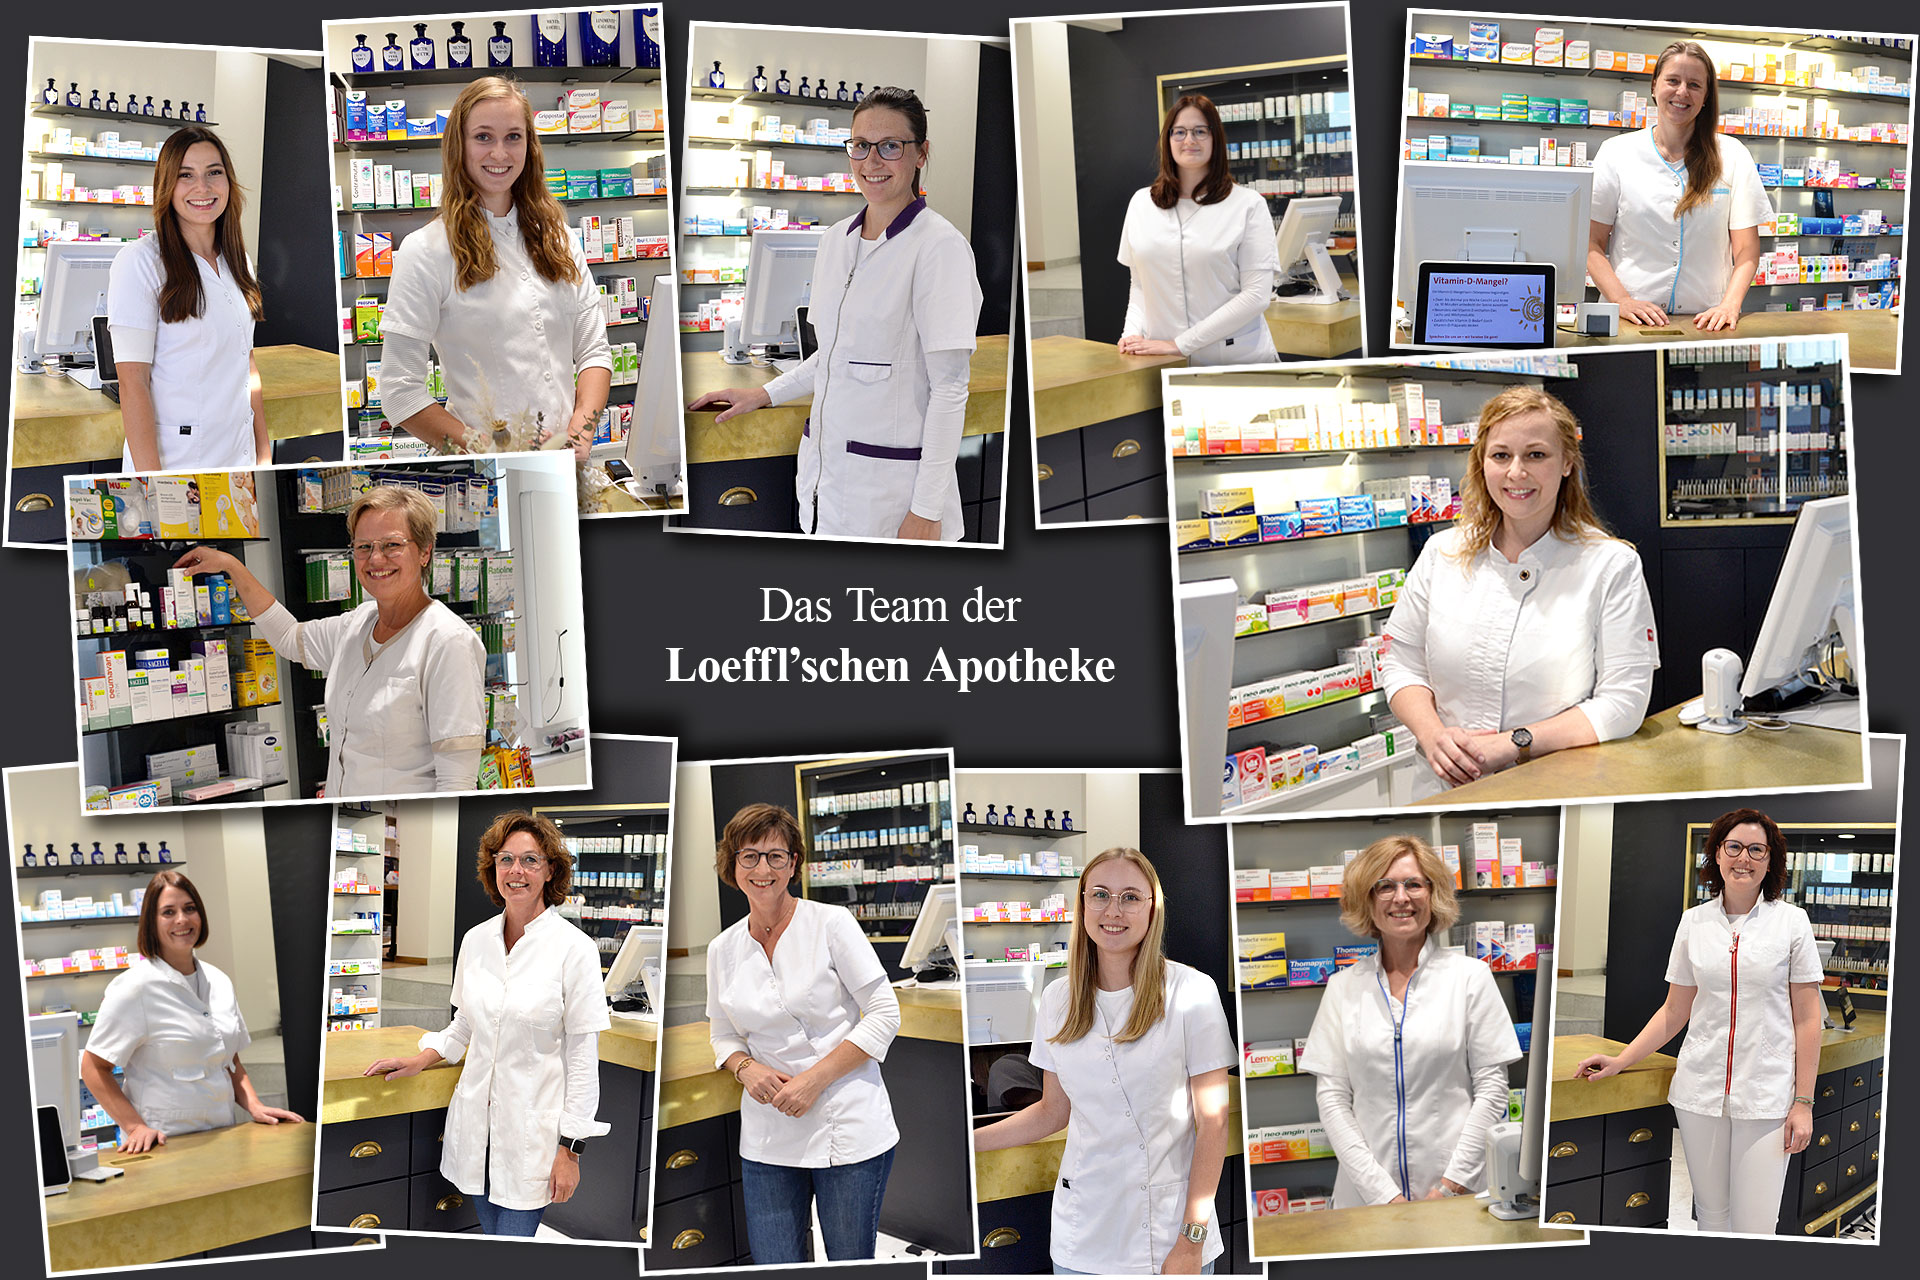 Das Team der Loeffl'schen Apotheke in Arnstorf